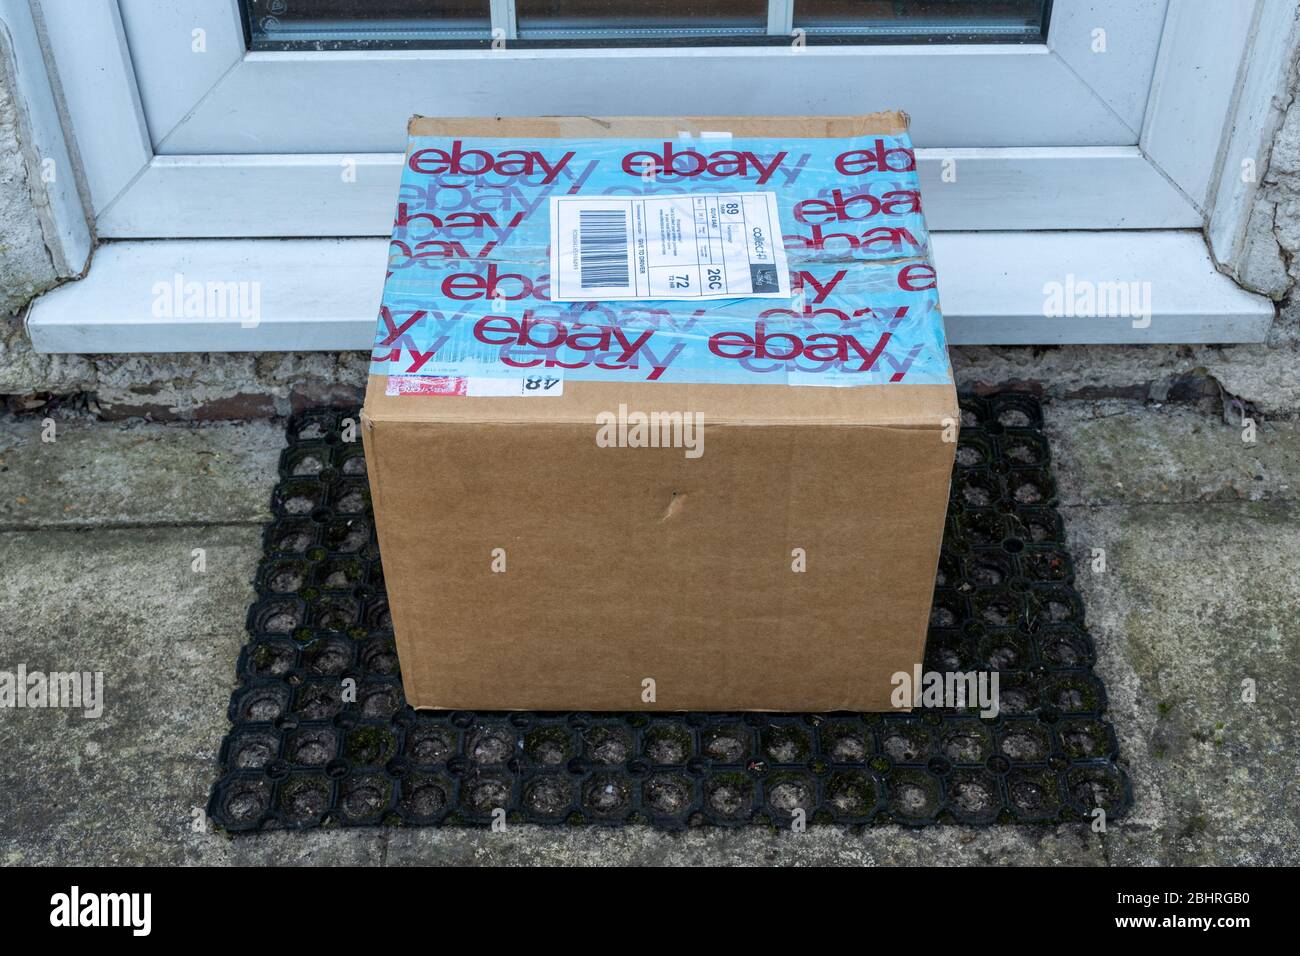 Colis eBay, boîte en carton, paquet, livraison, laissé à la porte, Royaume-Uni Banque D'Images